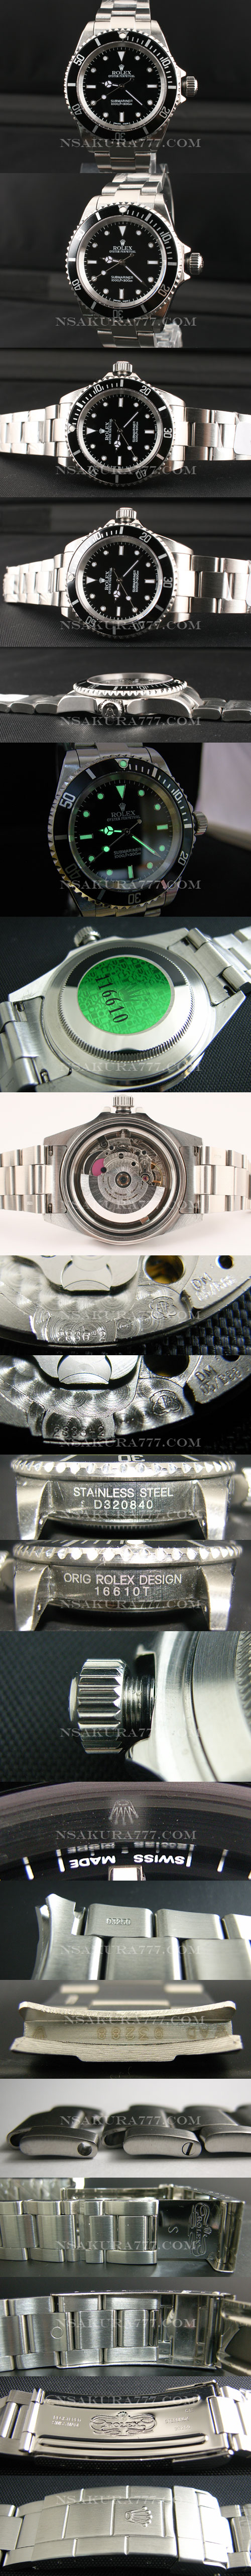 レプリカ時計ロレックス サブマリーナ ノーデイト 文字盤最新改良白2836-2搭載 - ウインドウを閉じる